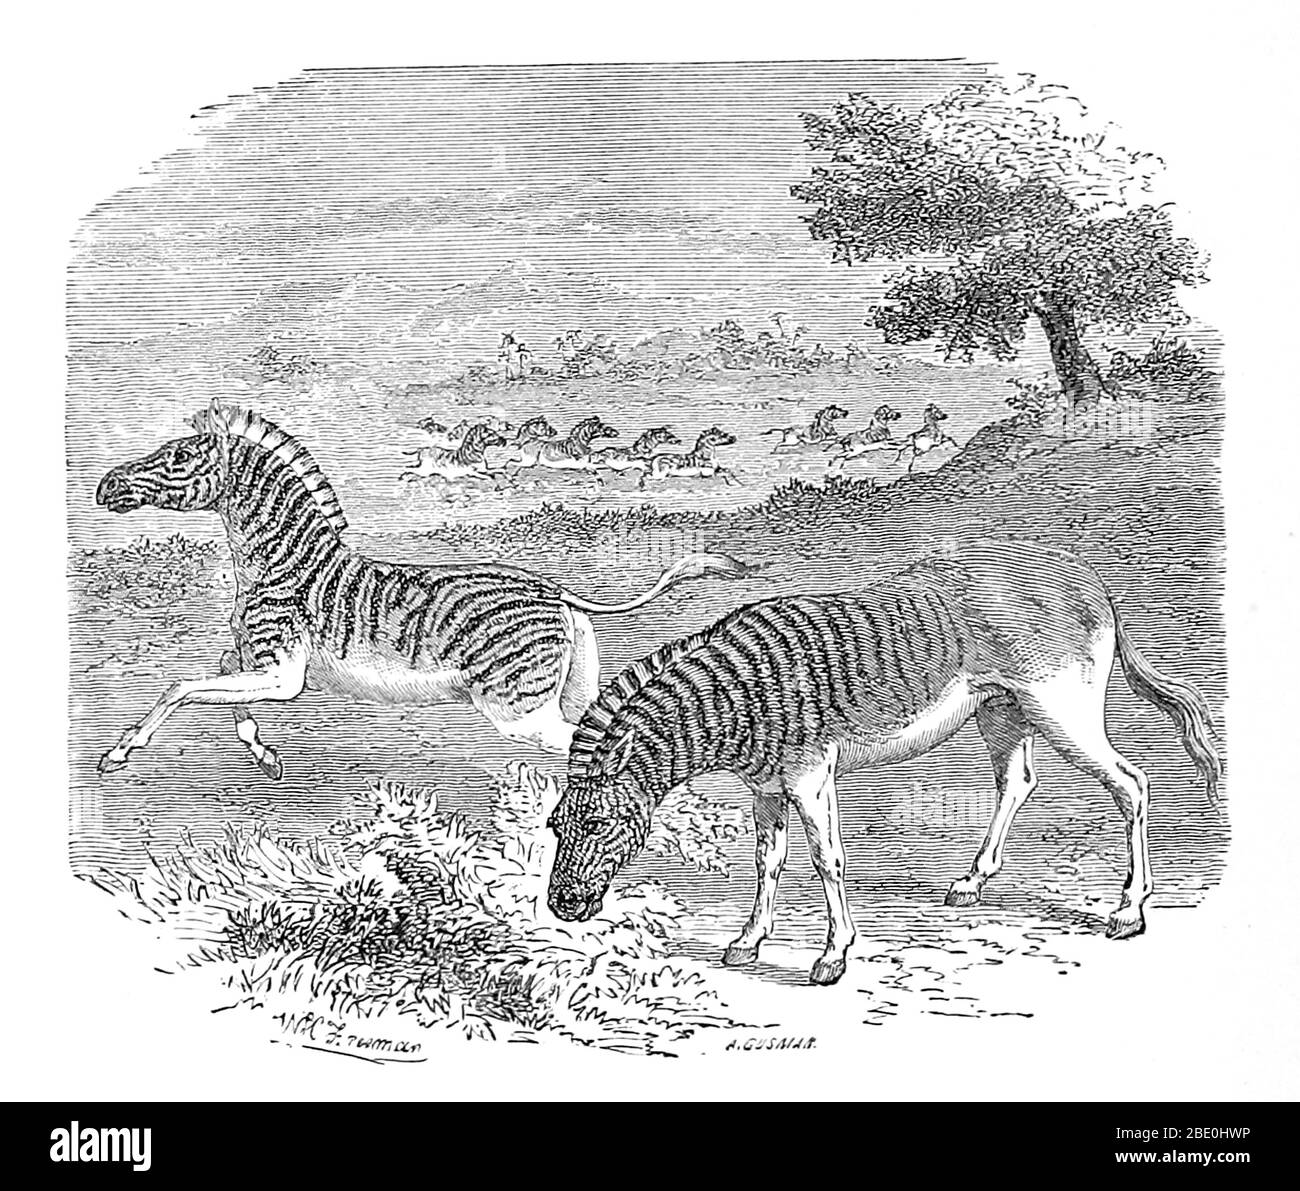 Eine Abbildung aus 1869 eines Zebras (links) und eines Quagga (rechts). Quagga (Equus quagga quagga) ist eine ausgestorbene Unterart der Ebenen Zebra, die in Südafrika bis zum neunzehnten Jahrhundert lebte. Es wurde lange Zeit gedacht, um eine eigenständige Art zu sein, aber genetische Studien haben gezeigt, dass es die südlichste Unterart der Ebenen Zebra. Es gilt als besonders nahe an Burchells Zebra. Sein Name leitet sich von seinem Ruf ab, der wie 'kwa-ha-ha' klingt. Das letzte gefangener Exemplar starb am 12. August 1883 in Amsterdam. Im Jahr 1984 war die Quagga das erste ausgestorbene Tier, das seine DNA analysiert haben, und die Stockfoto